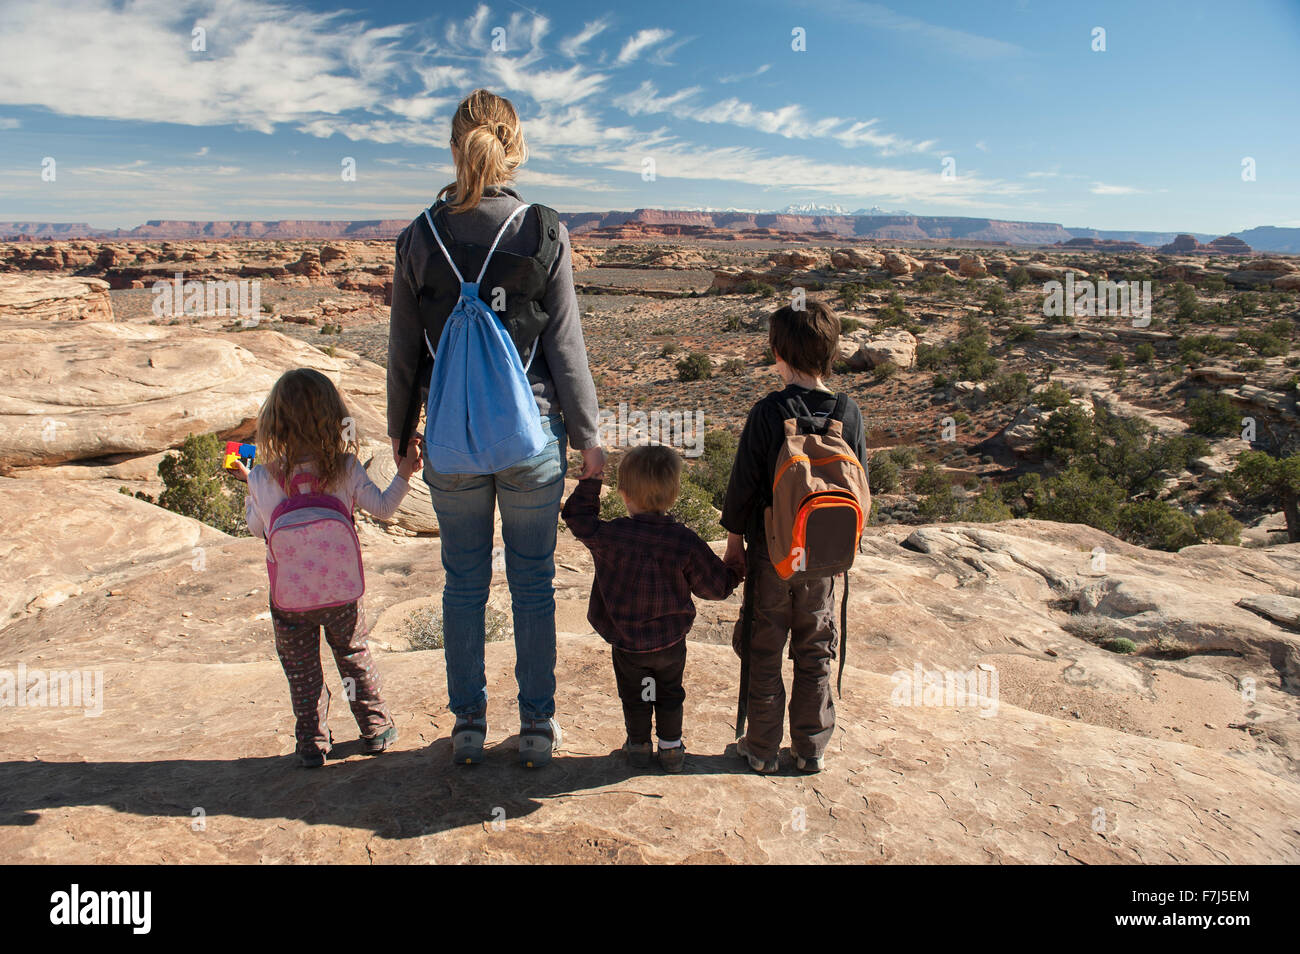 Family vue panoramique dans la région de Canyonlands National Park, Utah, USA Banque D'Images